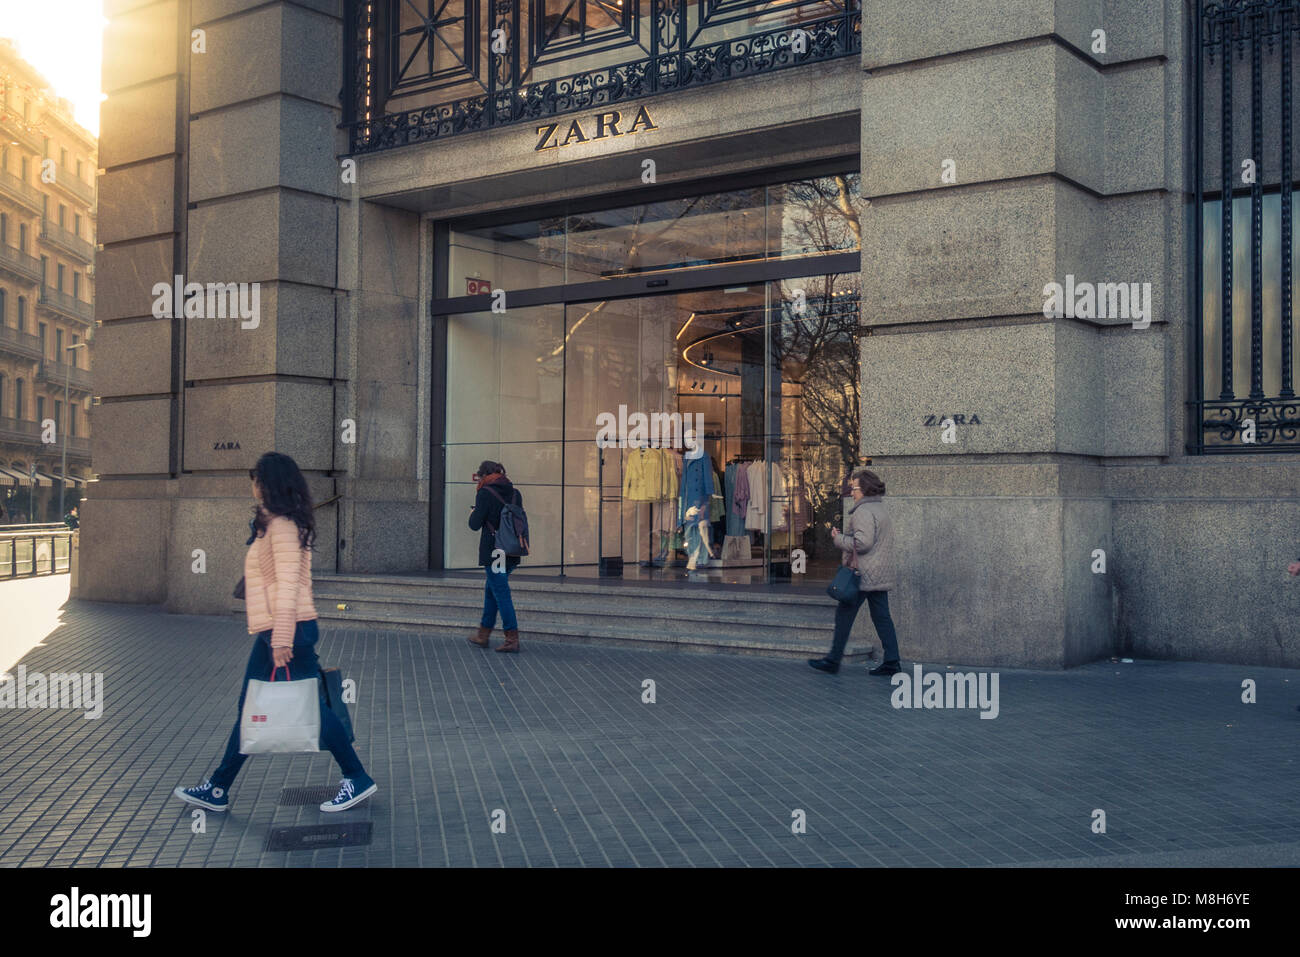 Barcelone, Espagne. Février 2018 : les gens marcher en face de Zara shop windows en centre-ville de Barcelone, Plaza Catalunya, considérée comme le centre-ville. Co Banque D'Images